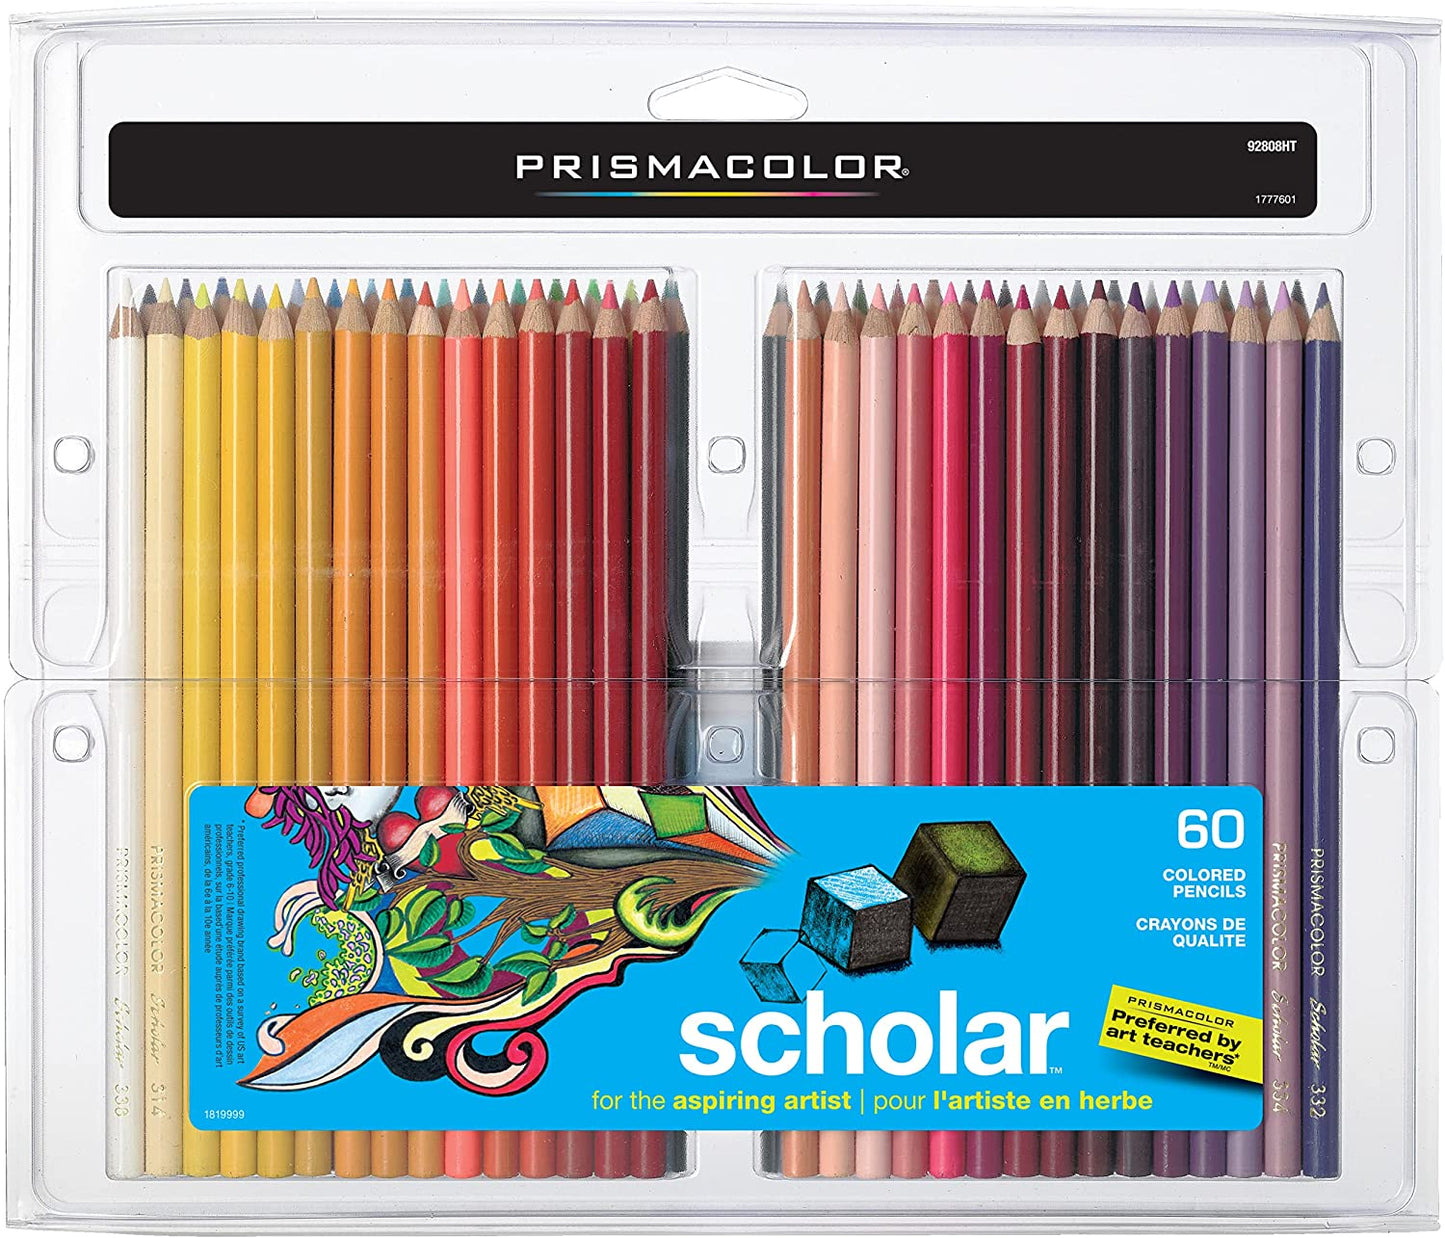 Prismacolor Scholar Pencil Set, Assorted Colors